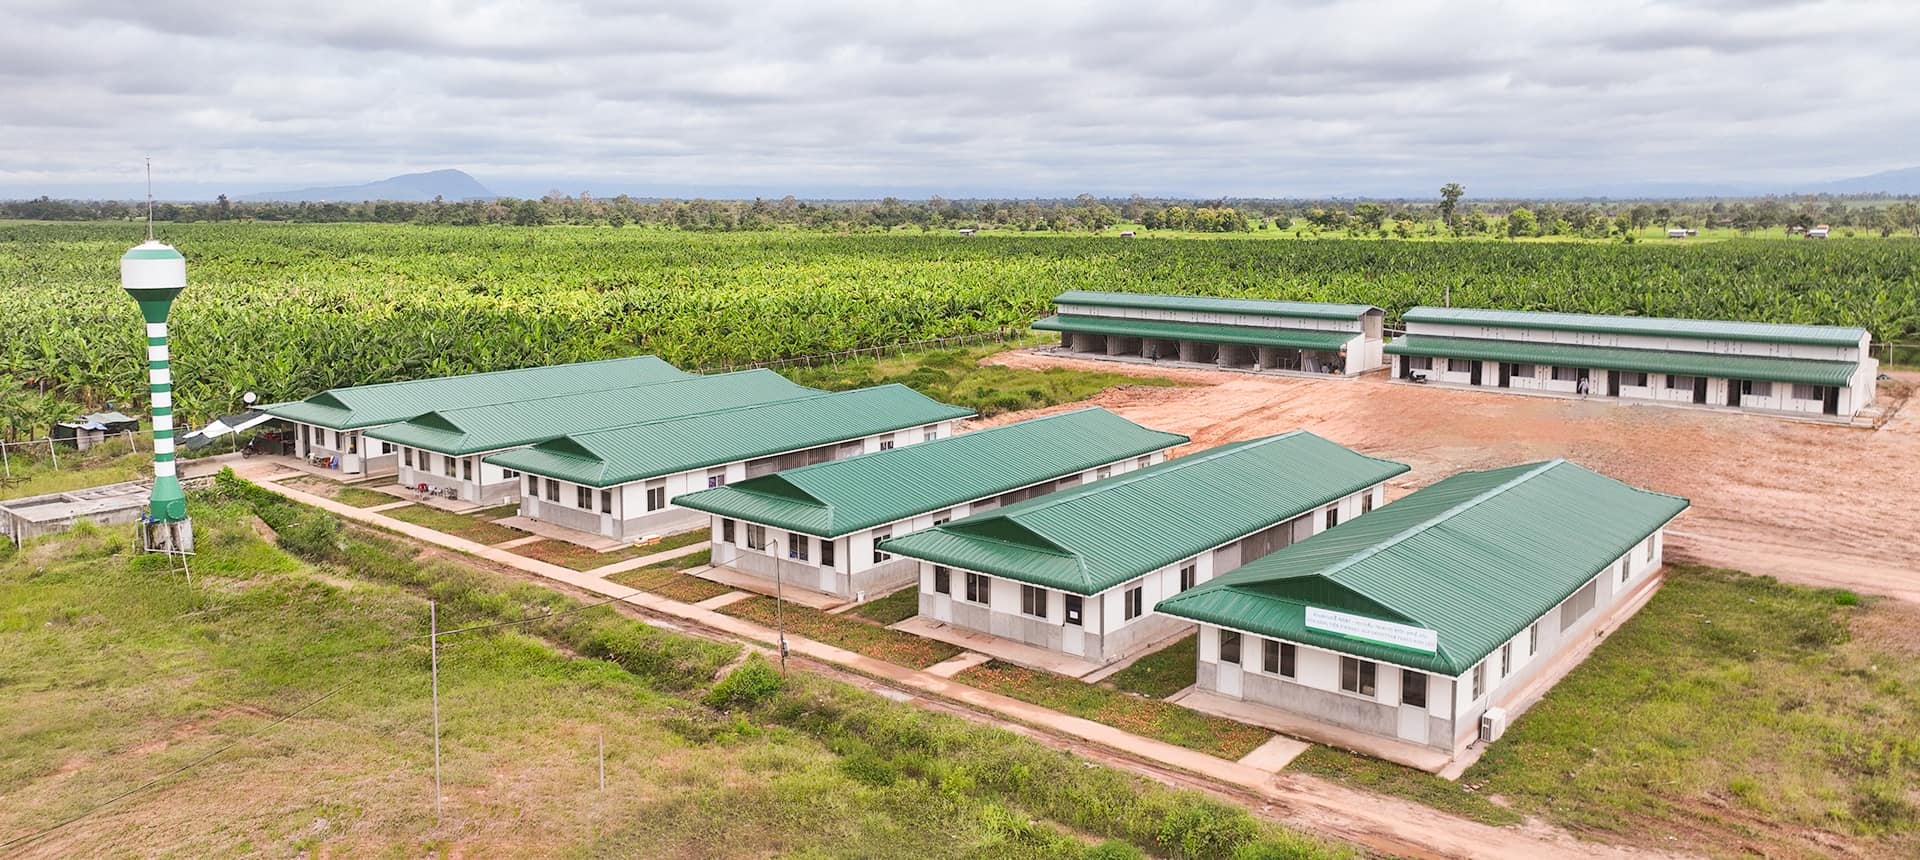 Các khu nhà ở được xây dựng khang trang, góp phần nâng cao đời sống cho CBCNV tại các Khu liên hợp nông nghiệp